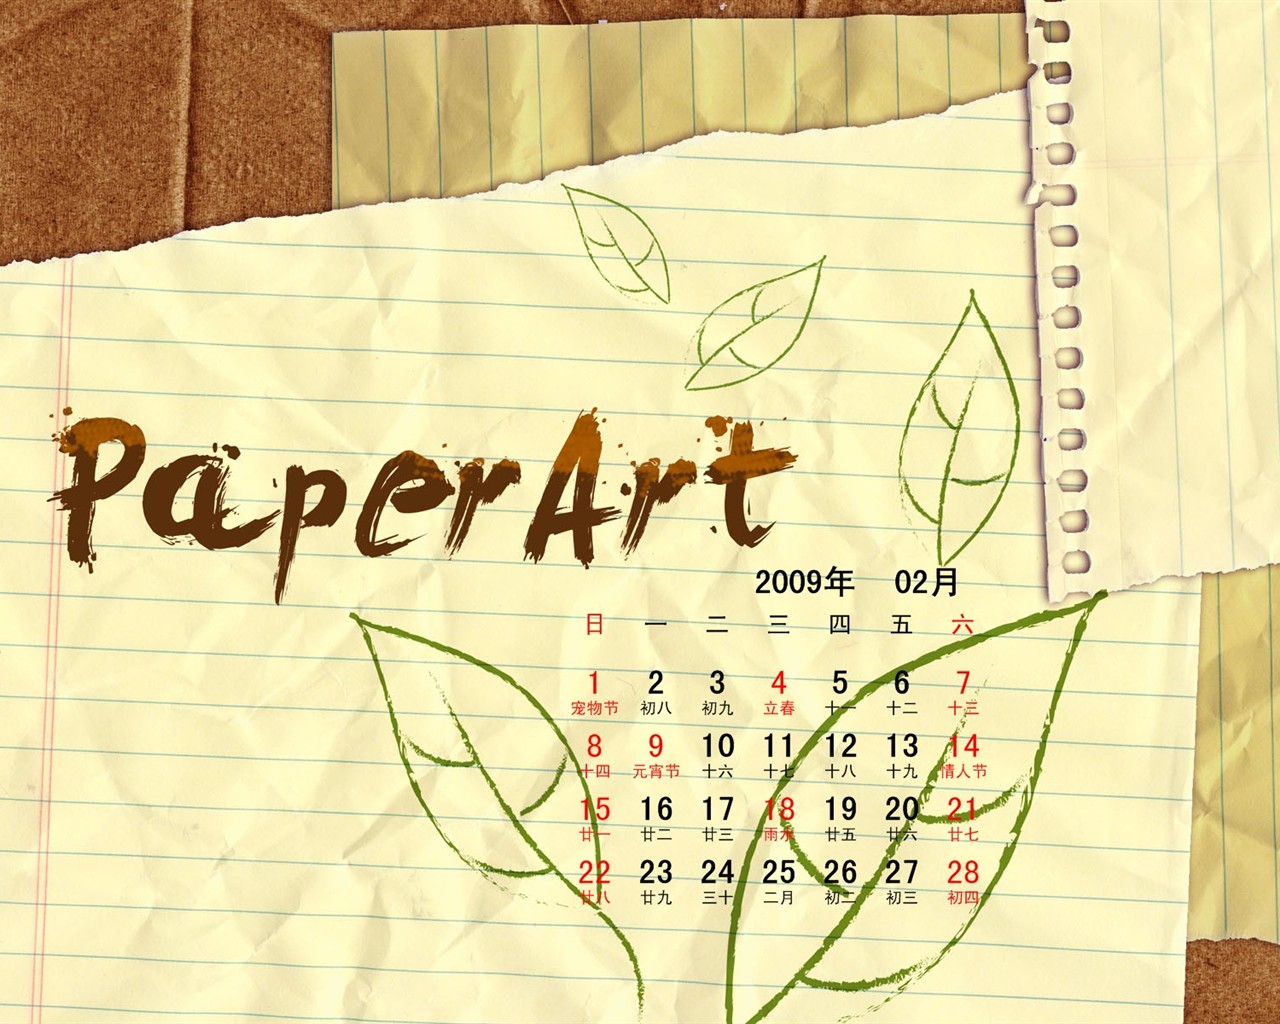 PaperArt 09 años en el fondo de pantalla de calendario febrero #27 - 1280x1024